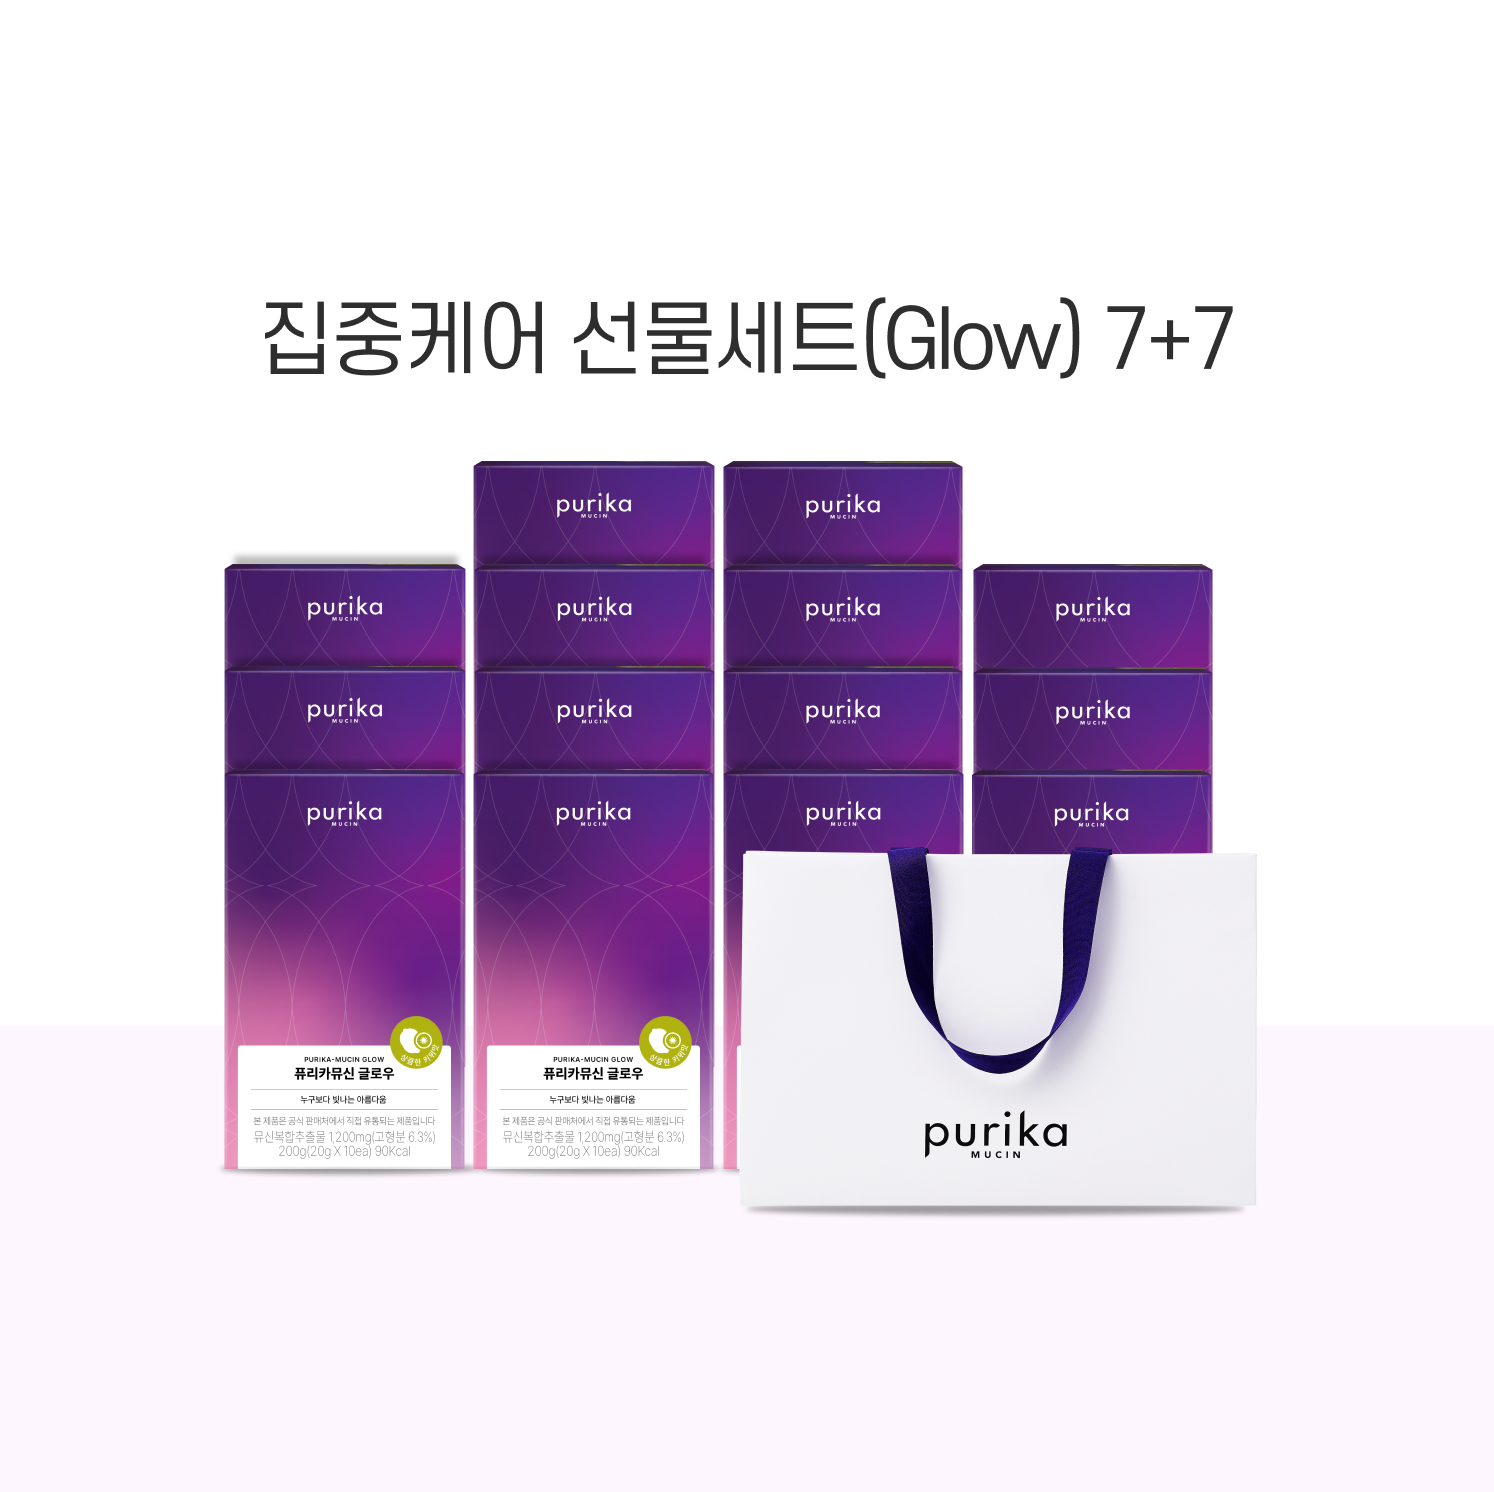 [기간한정] 뮤신 글로우 7+7 선물세트 (14box,140일) + 쇼핑백 증정(1매)